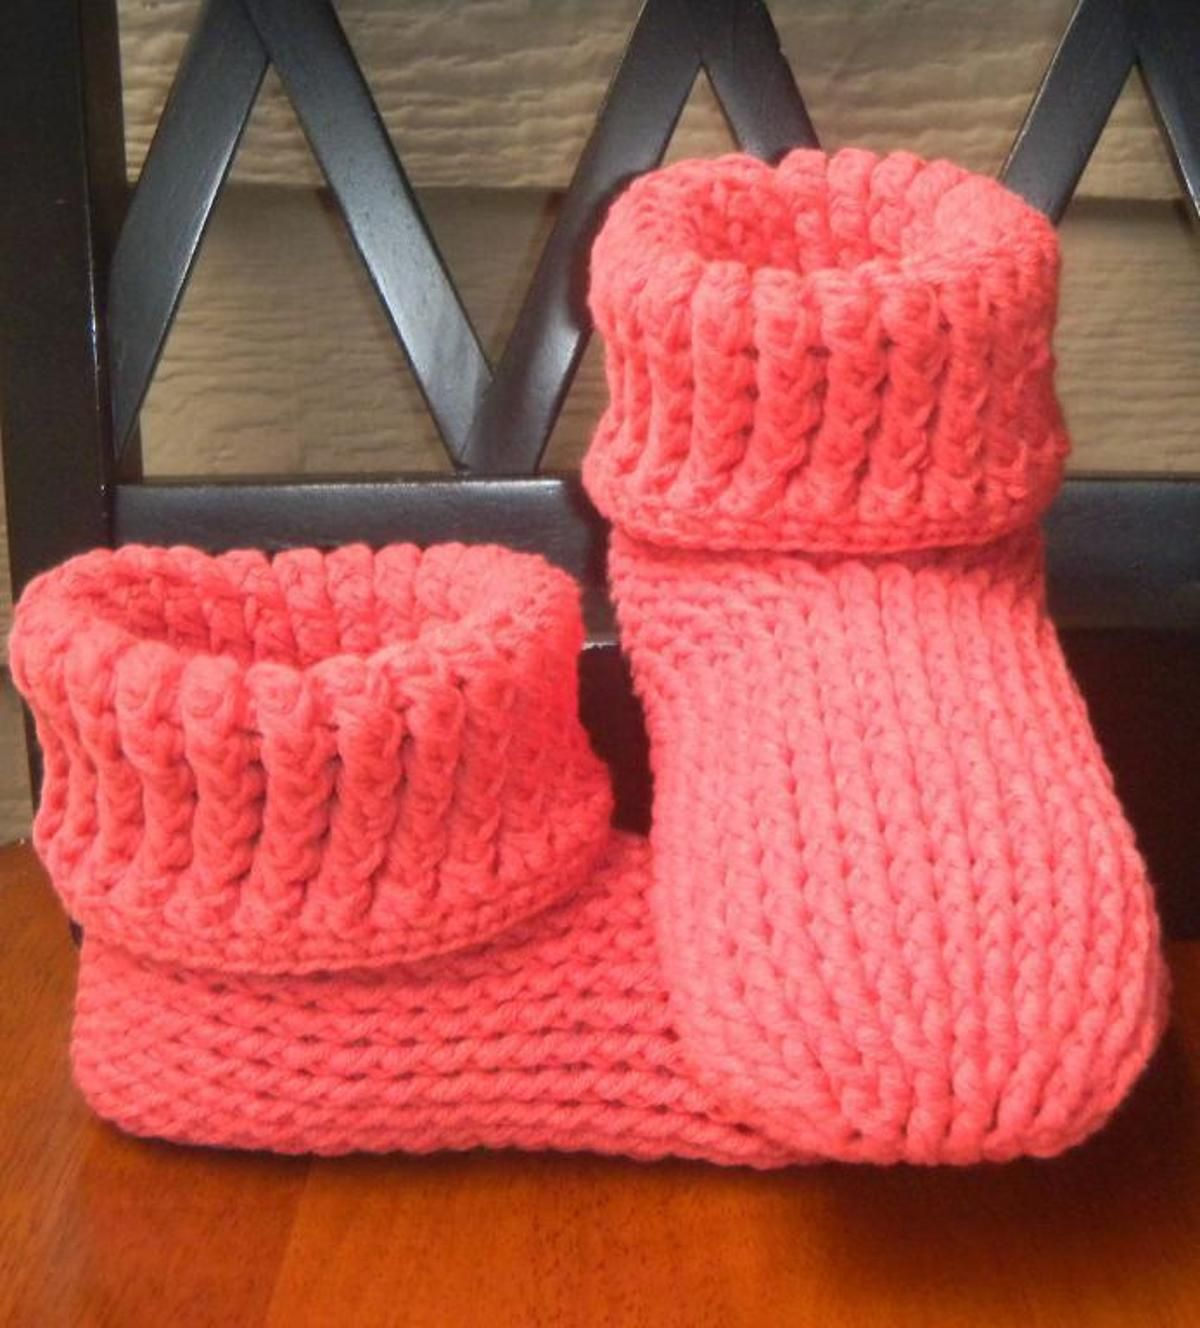 Crochet Bootie Pattern For Adults Knit Look Slipper Boots Crochet Adult Crochetknits Pinterest